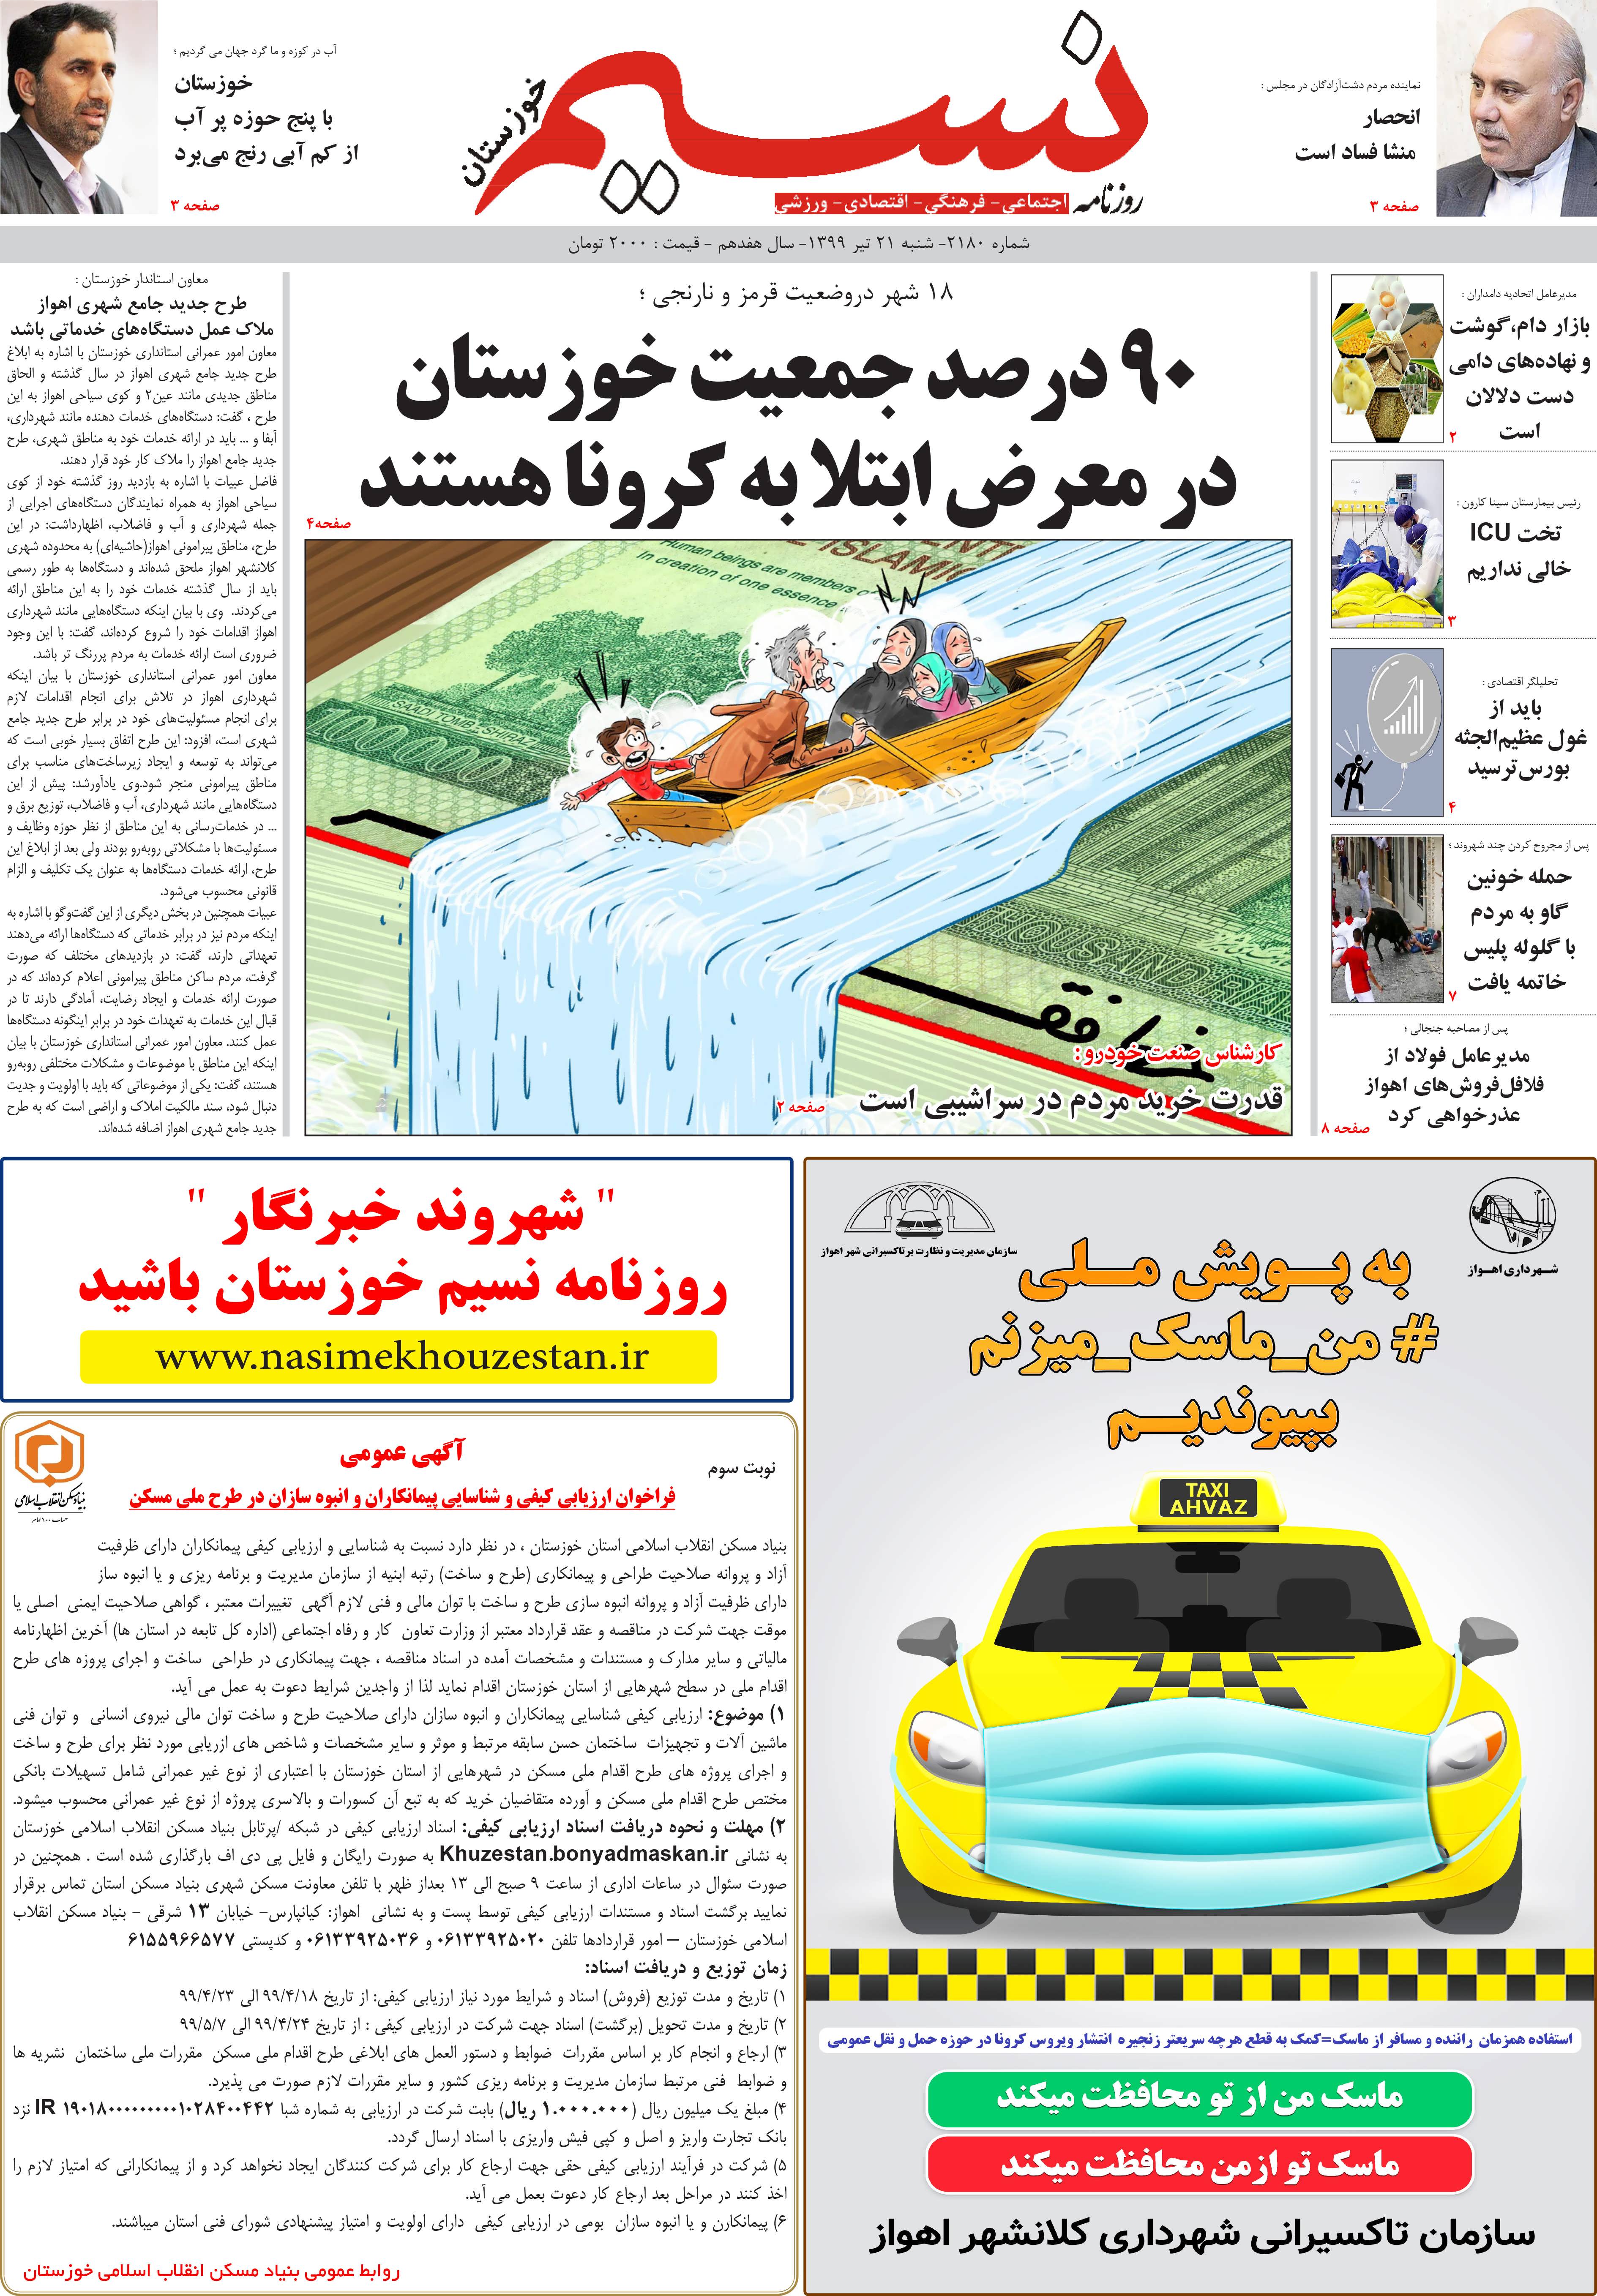 صفحه اصلی روزنامه نسیم شماره 2180 